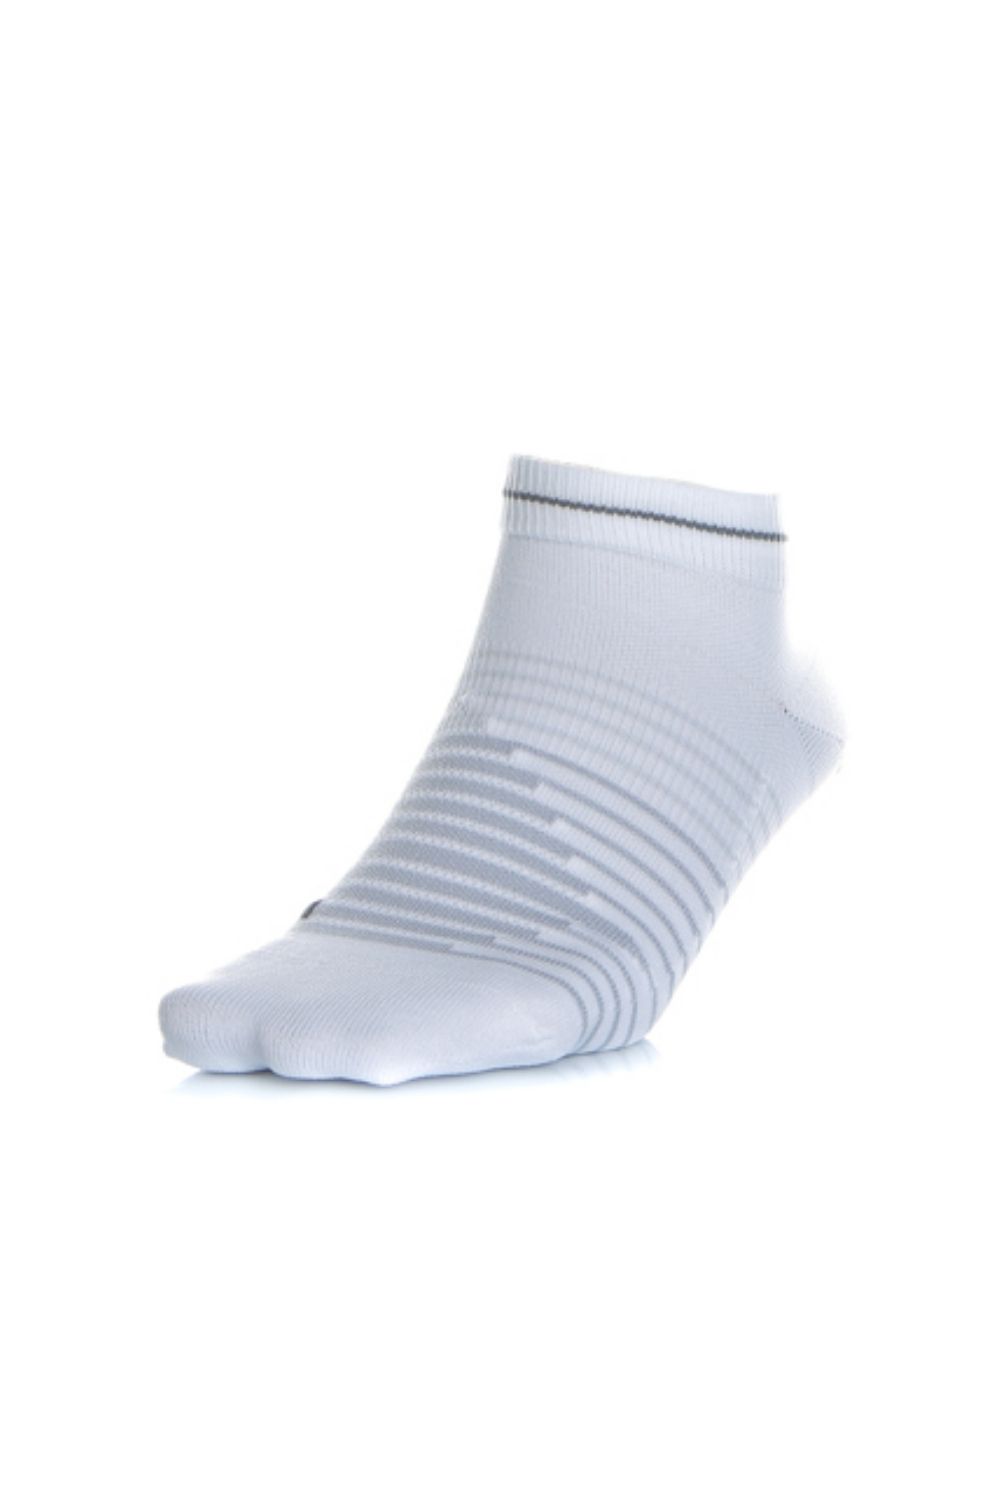 NIKE - Unisex κάλτσες NIKE λευκές Γυναικεία/Αξεσουάρ/Κάλτσες